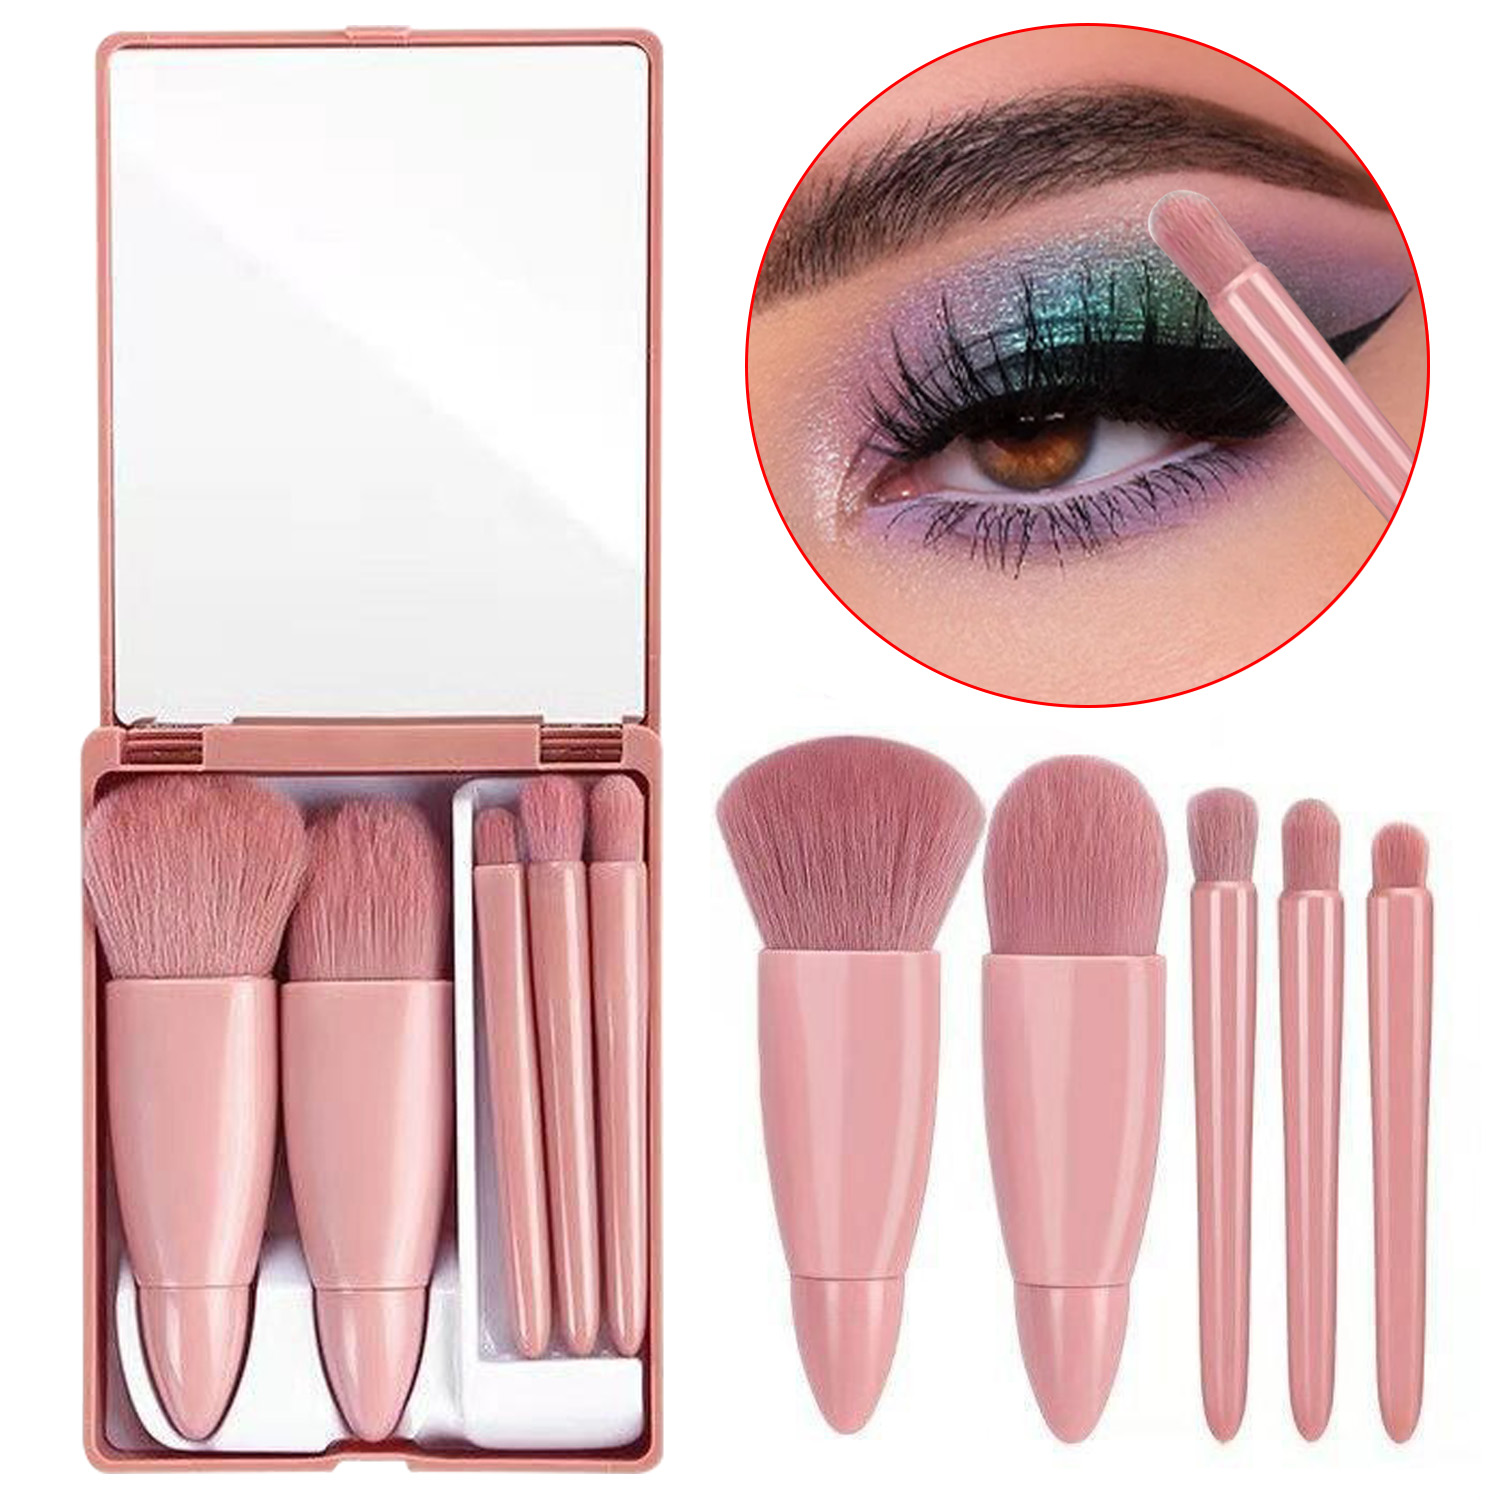 Short Handle Makeup Brush Set Synthetic Kabuki Powder Blush Contour Foundation Concealer Eyeshadow Brushes with Mirror